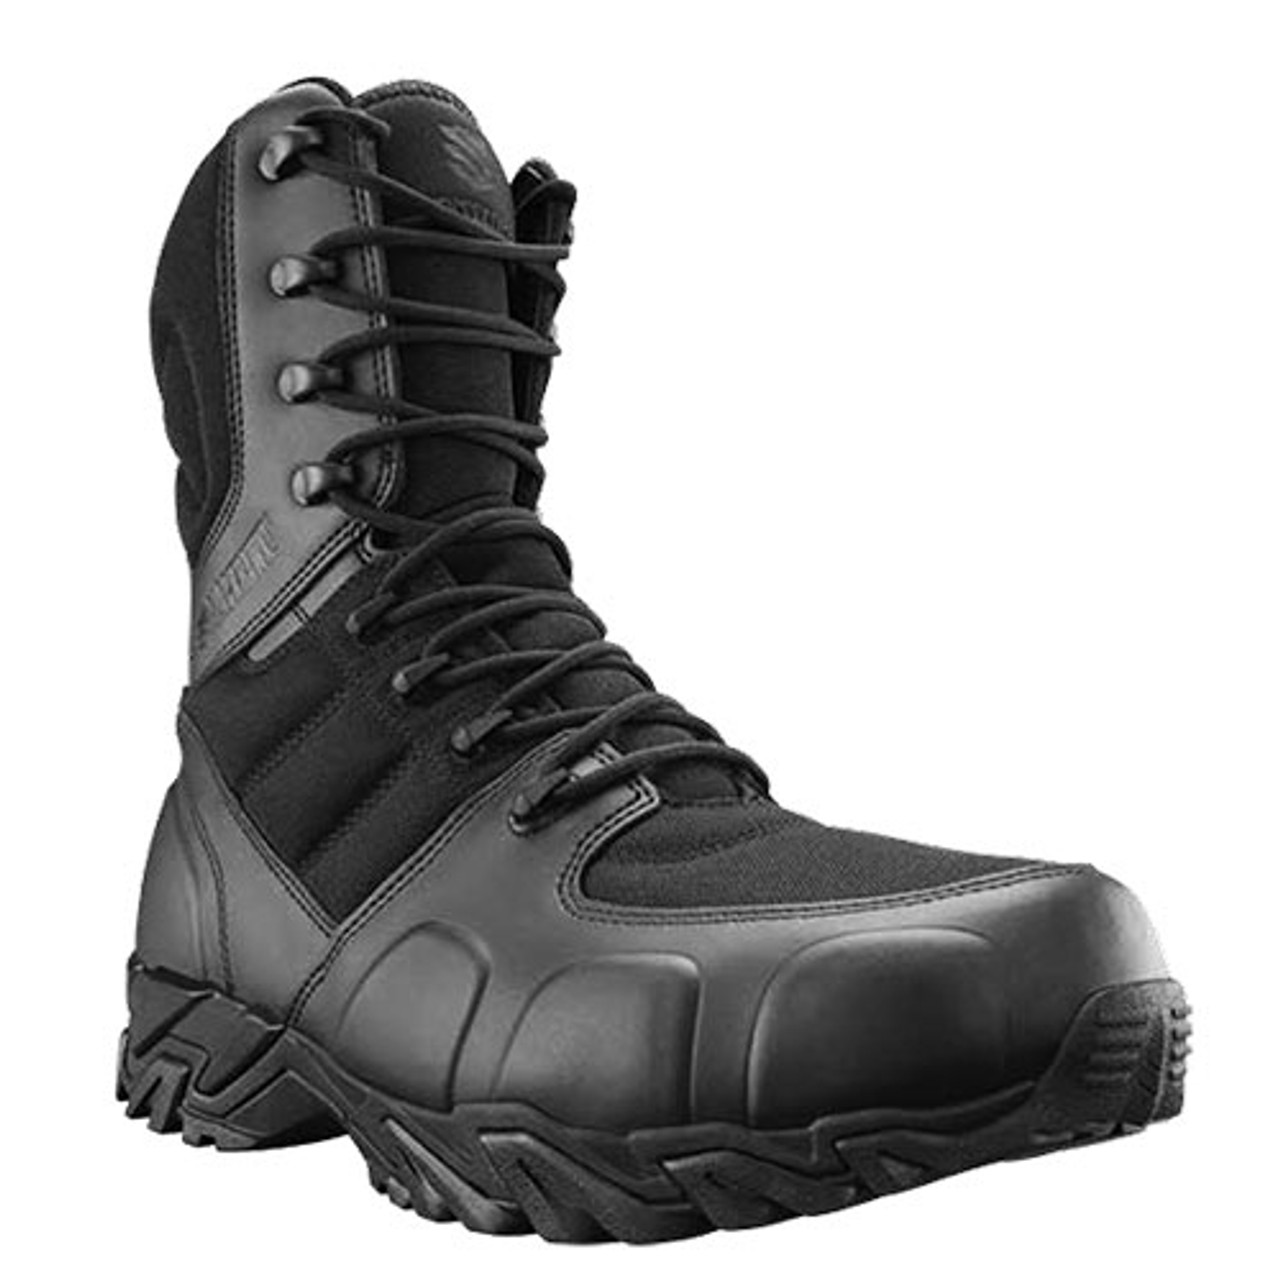 blackhawk ultralight side zip boot